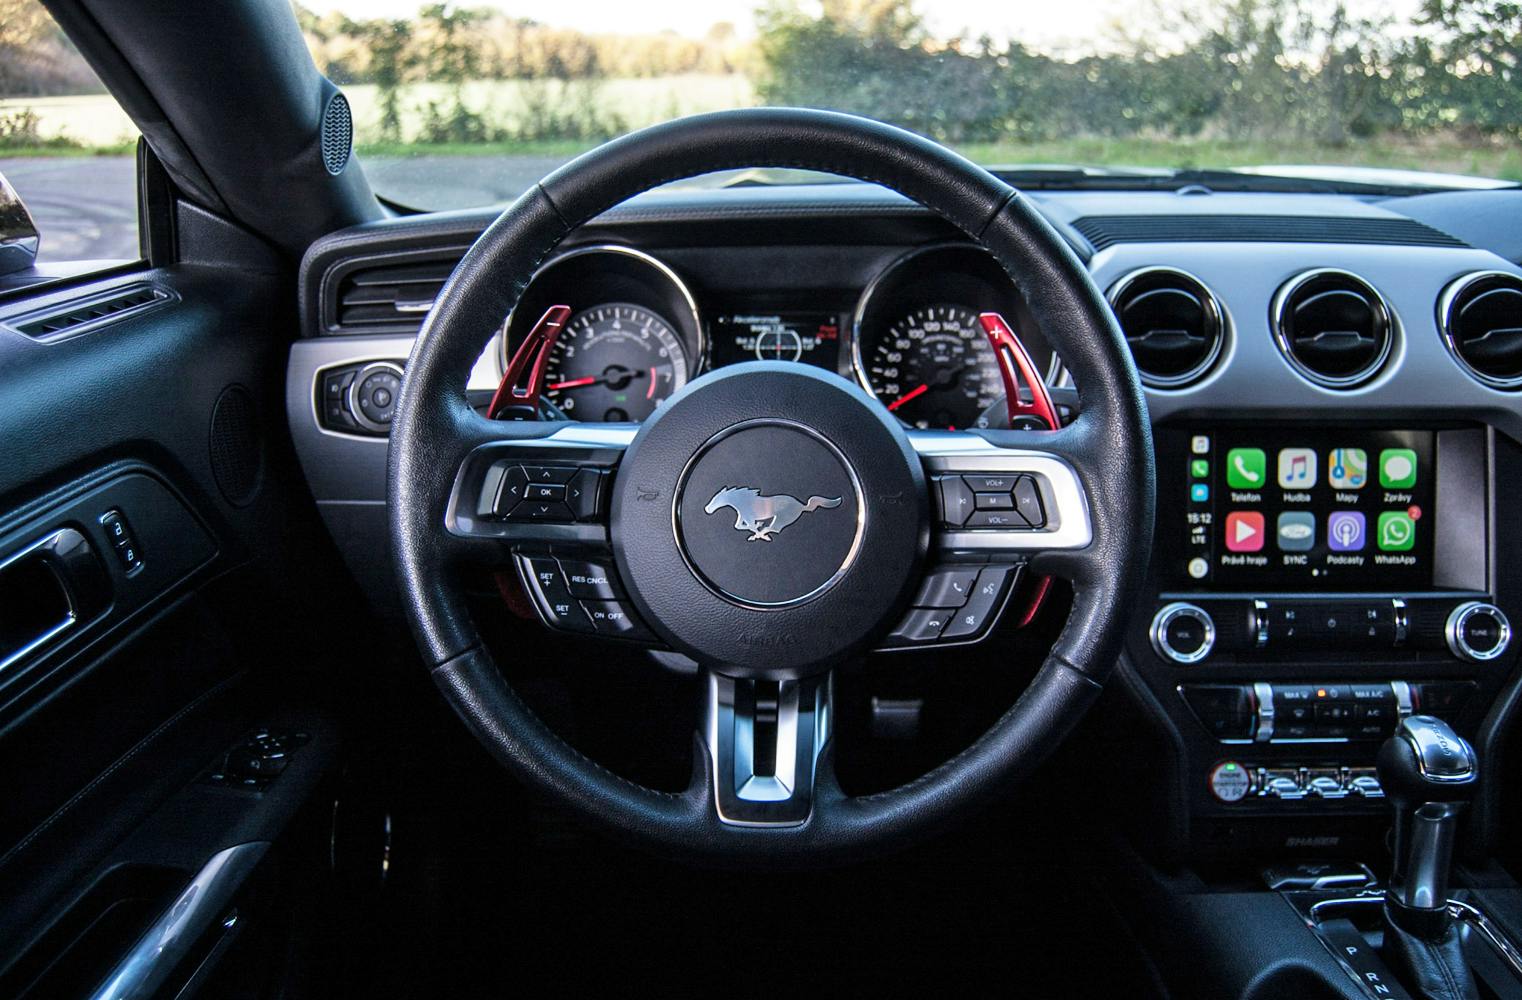 Ford Mustang GT 5.0 | Probefahrt im legendären Muscle Car